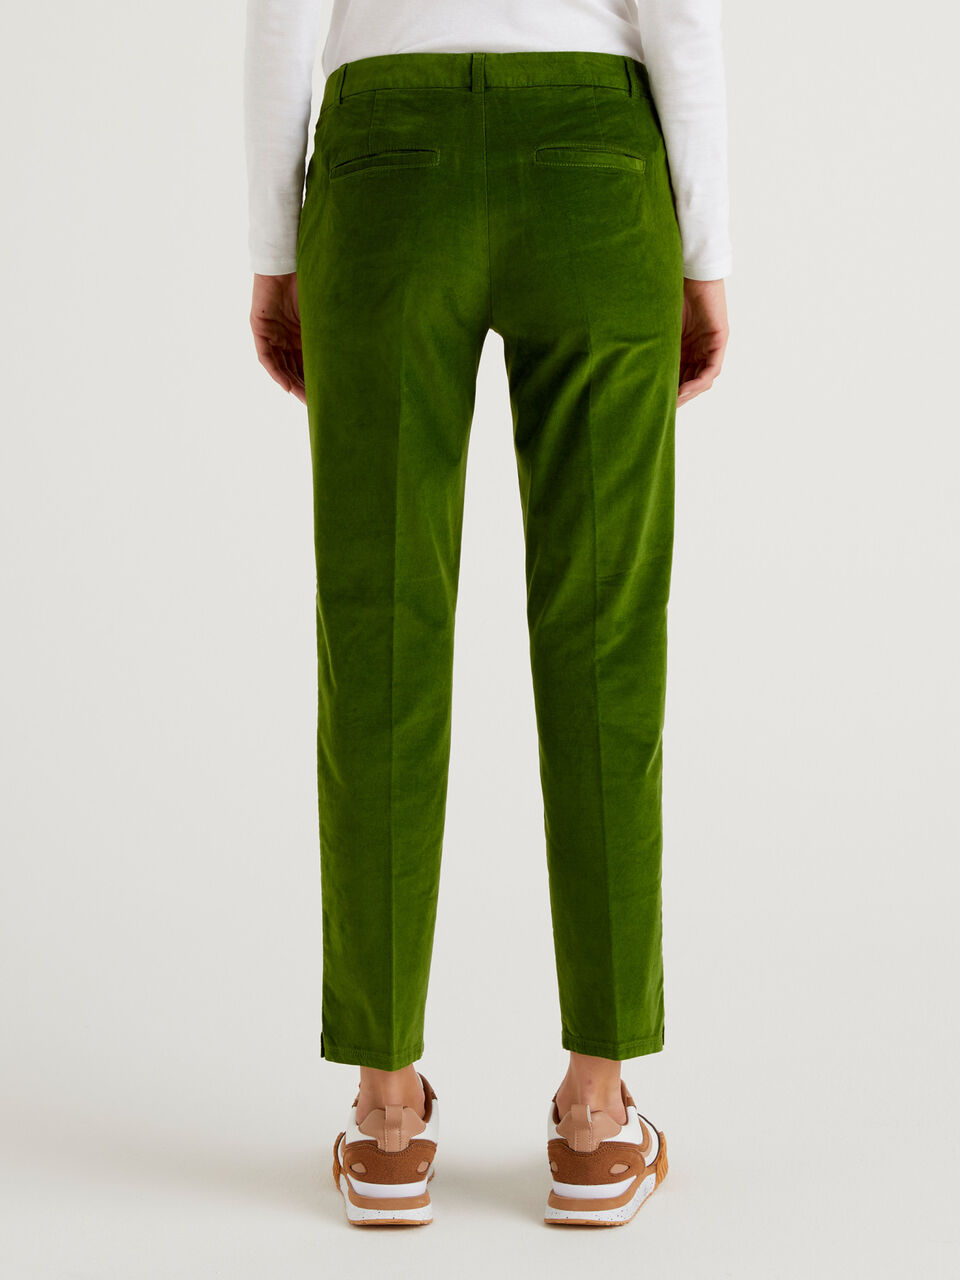 Very Much So Velvet Pants - Green